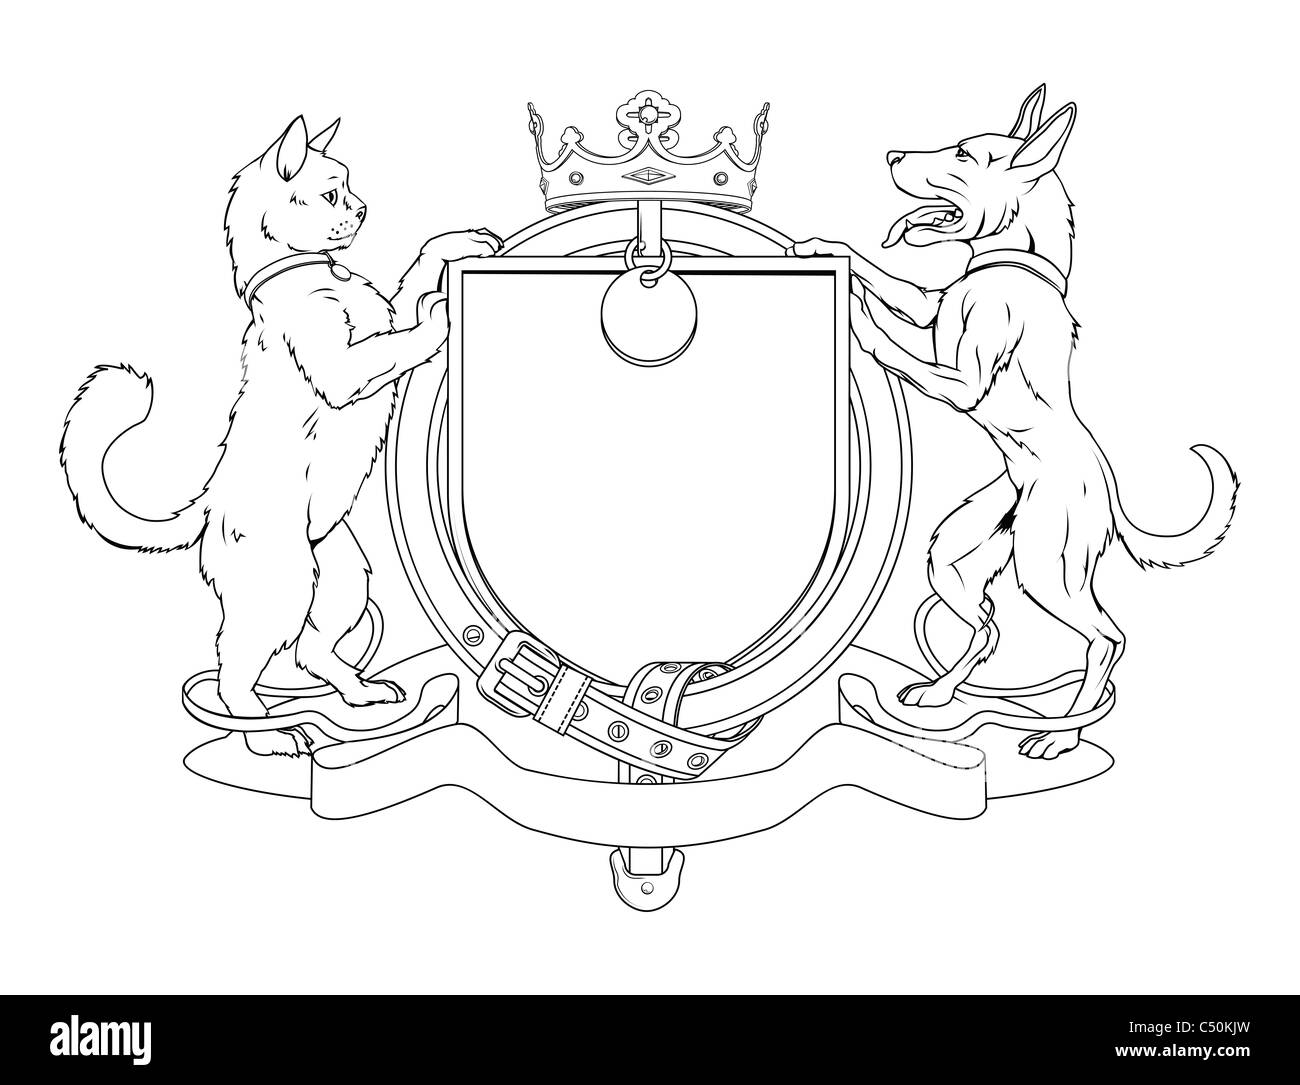 Katze und Hund Haustiere heraldischen Schild Wappen. Beachten Sie das Halsband statt Strumpfband. Stockfoto